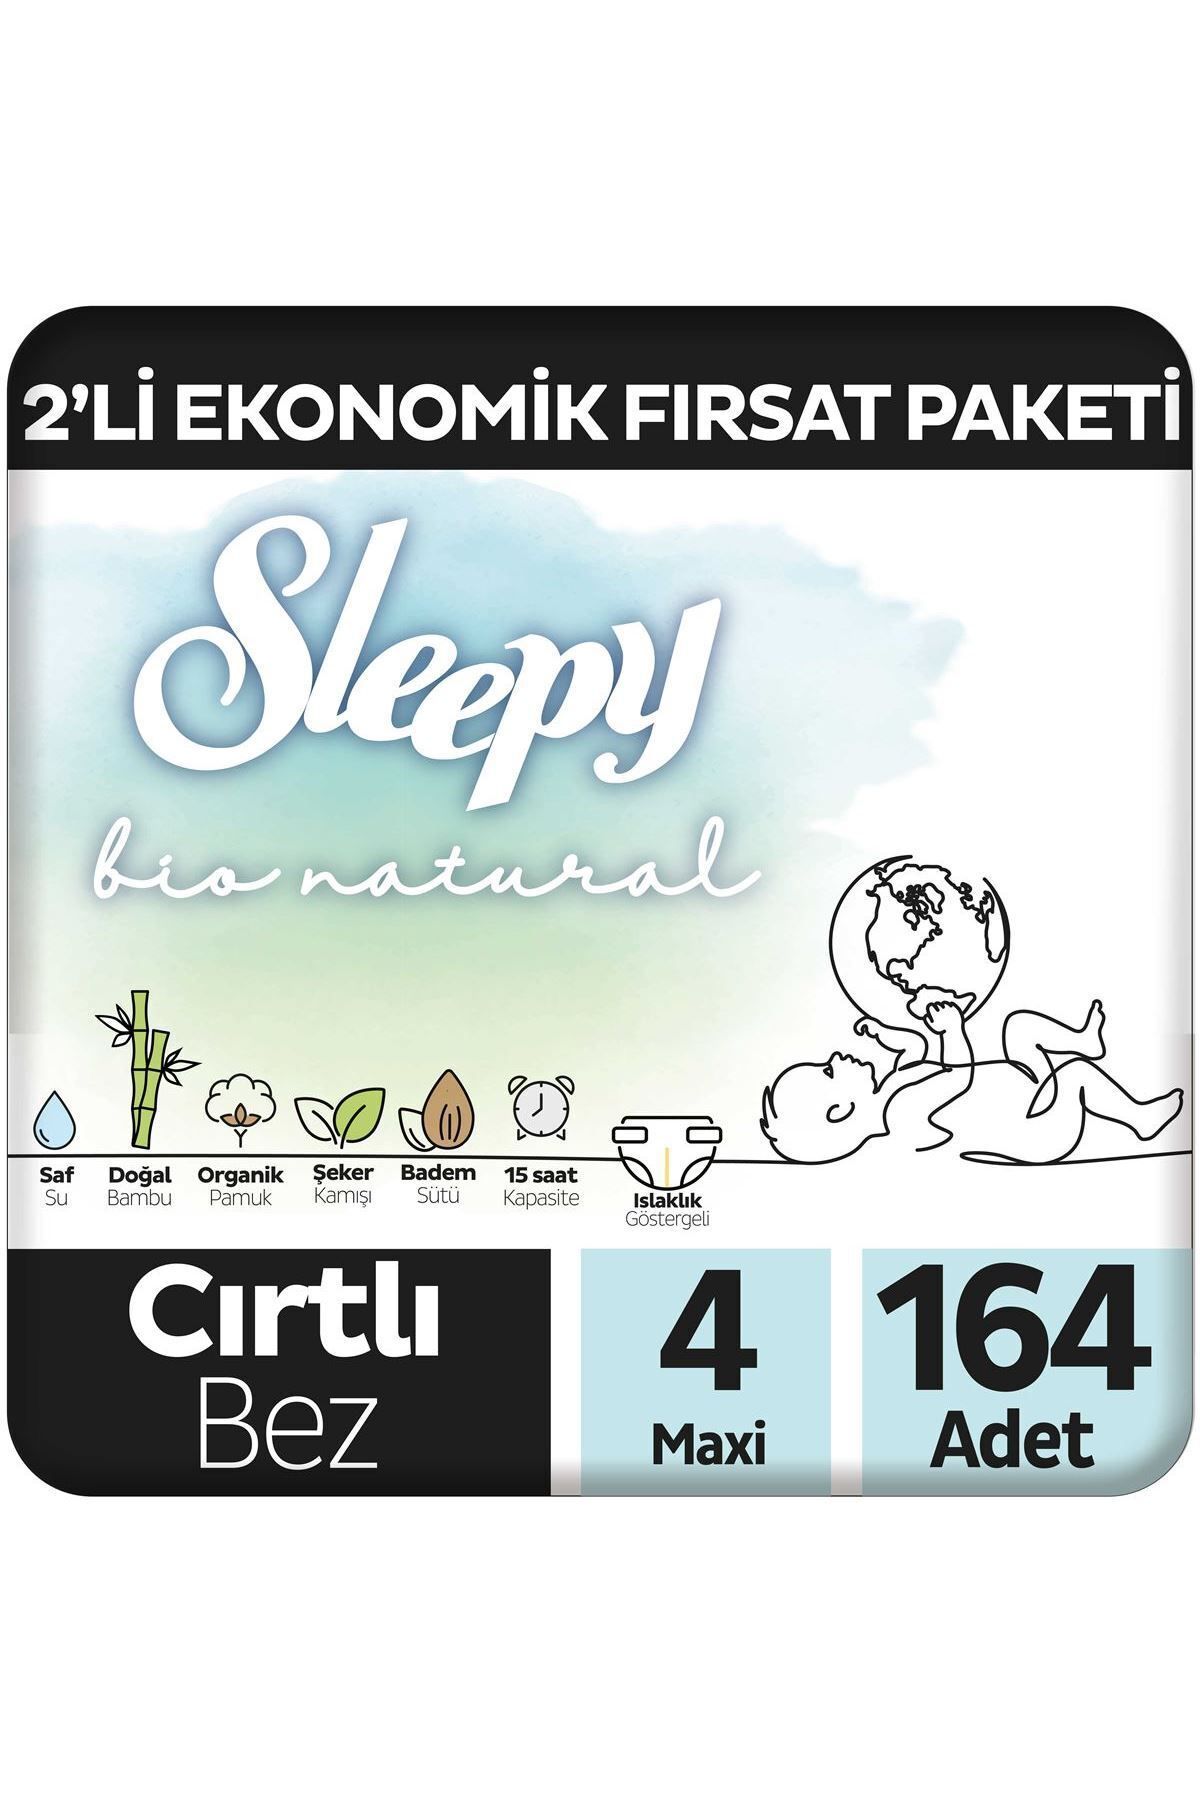 Sleepy Bio Natural 2'Li Ekonomik Fırsat Paketi Bebek Bezi 4 Numara Maxi 164 Adet